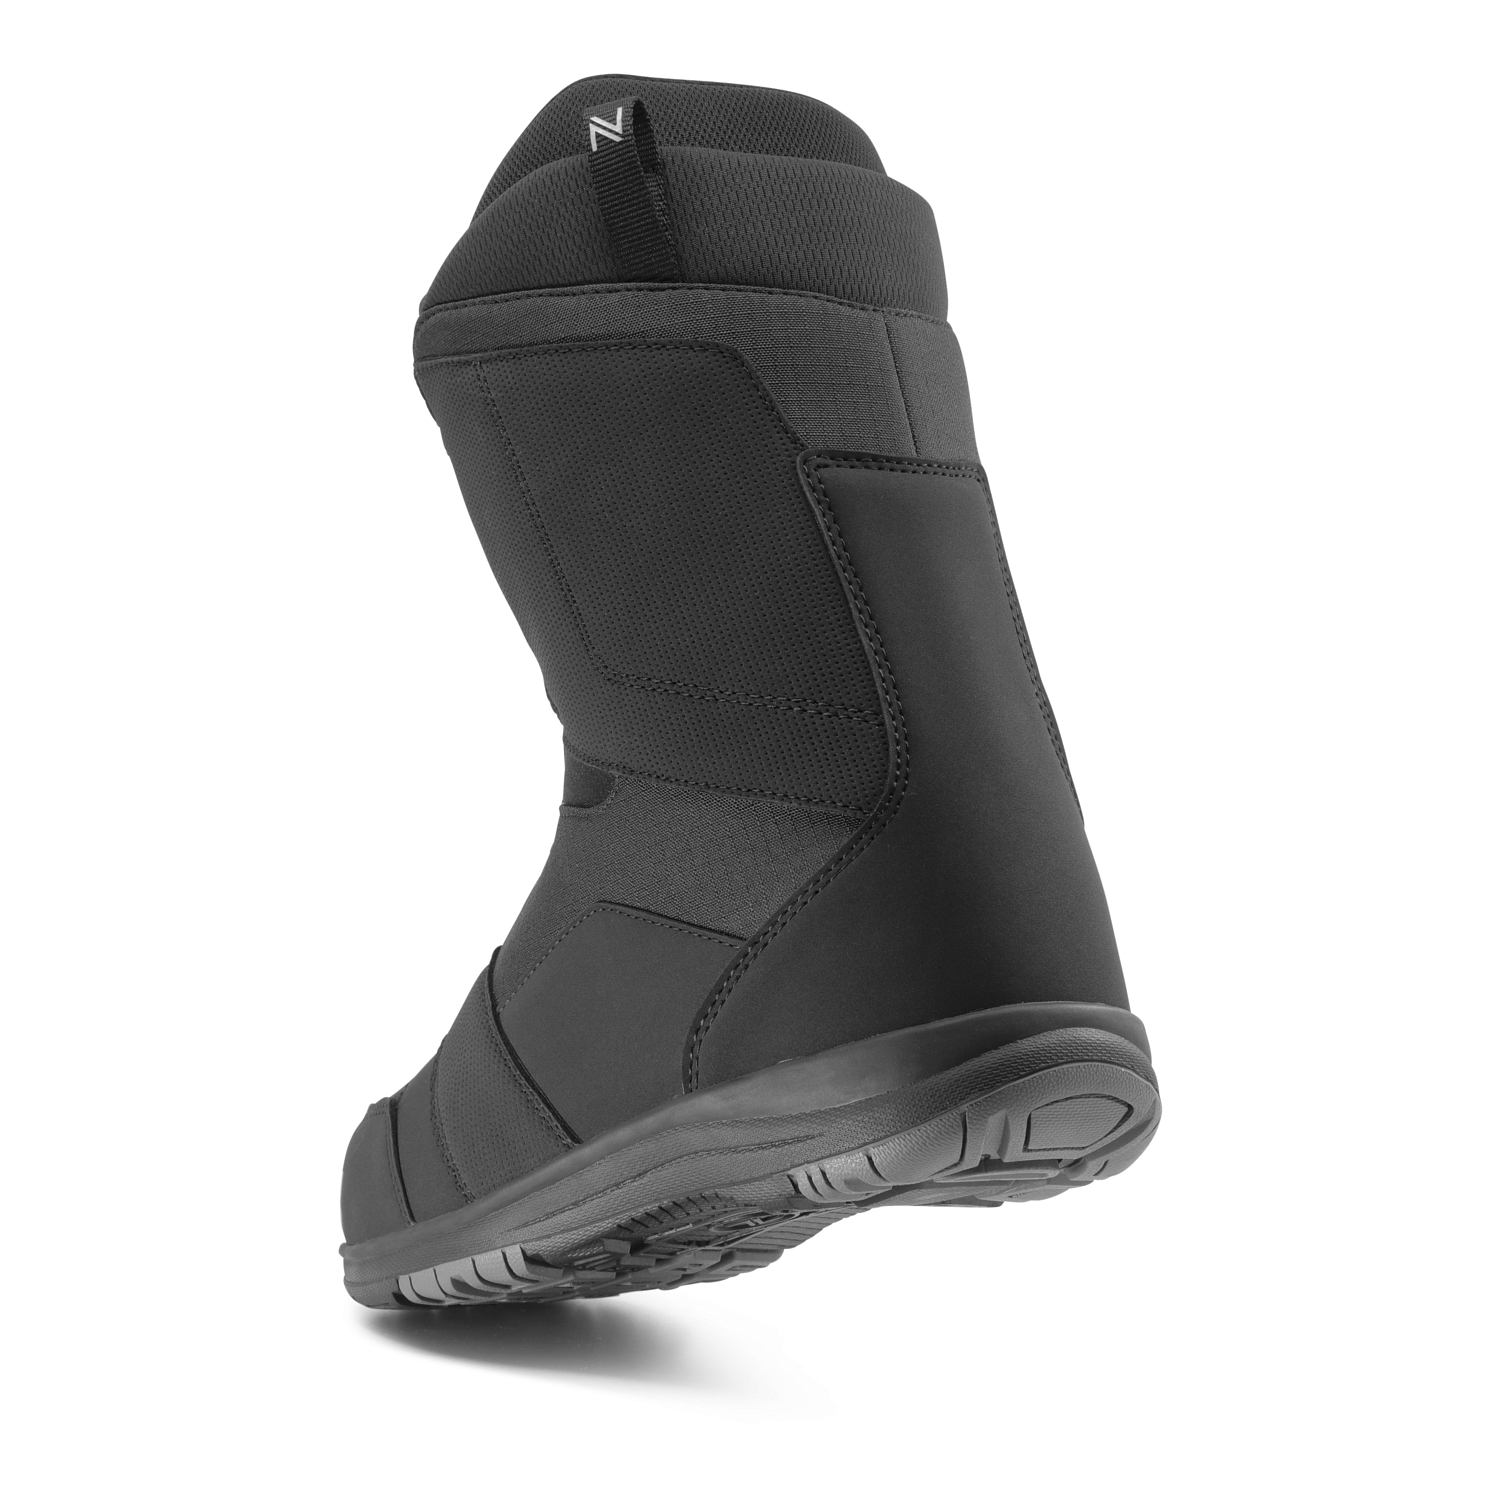 Ботинки для сноуборда NIDECKER 2020-21 Ranger Black